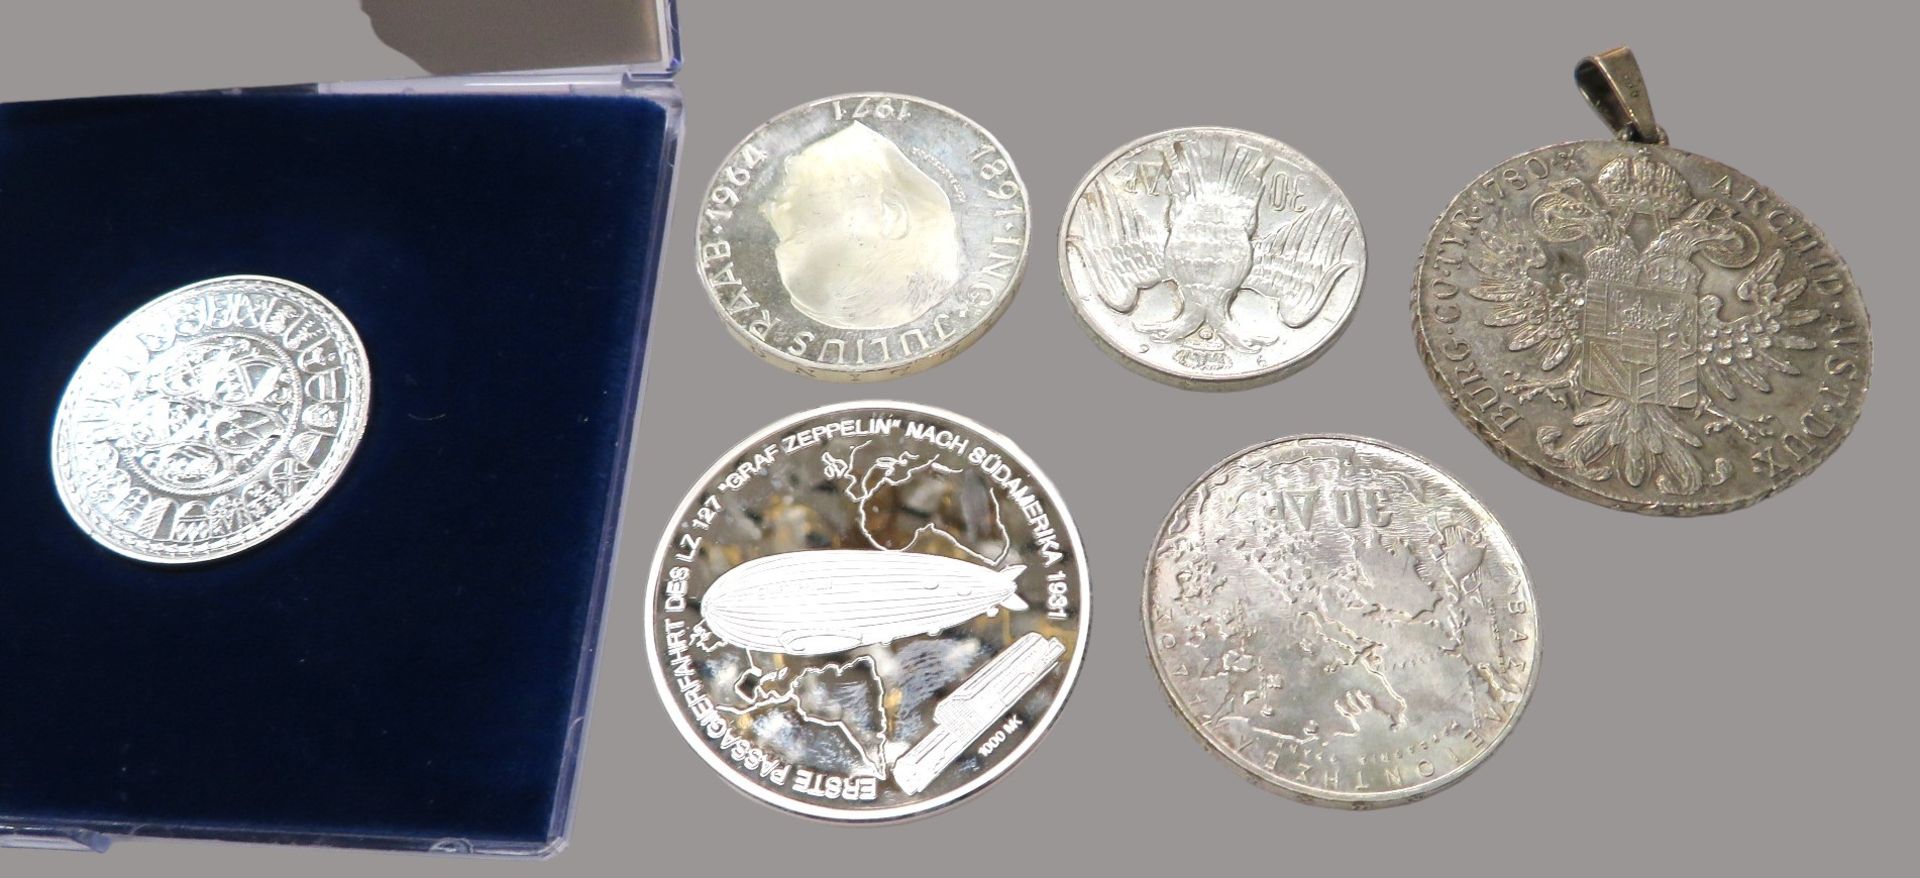 5 diverse Silbermünzen und Gedenkmünze "Graf Zeppelin"; 50-Schilling, Maria-Theresien-Taler, Konsta - Image 2 of 2